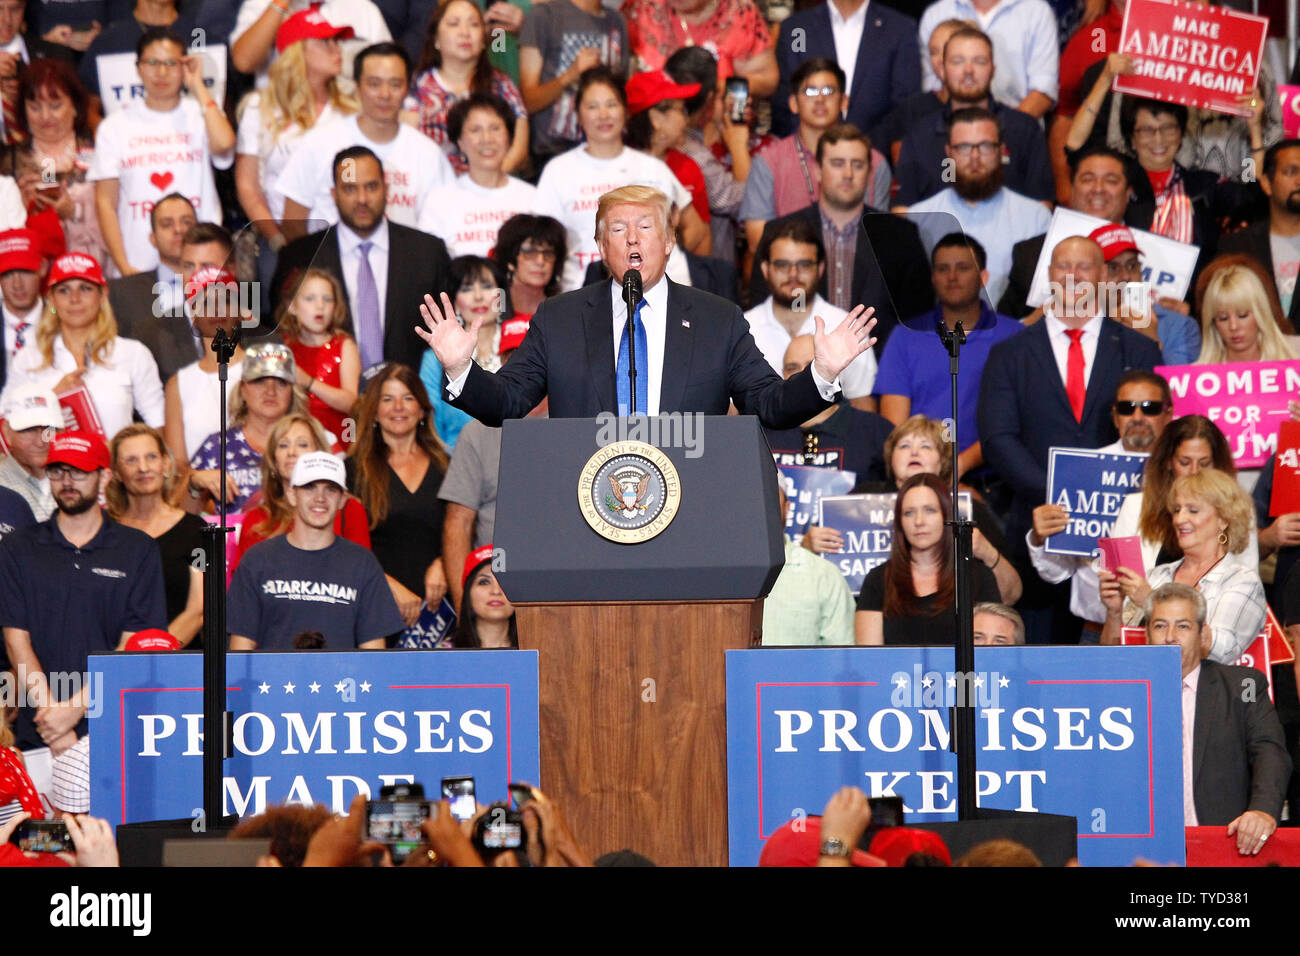 Le président Donald Trump participants adresses lors d'un rassemblement à la Las Vegas Convention Center à Las Vegas, Nevada le 20 septembre, 2018. Photo de James Atoa/UPI Banque D'Images